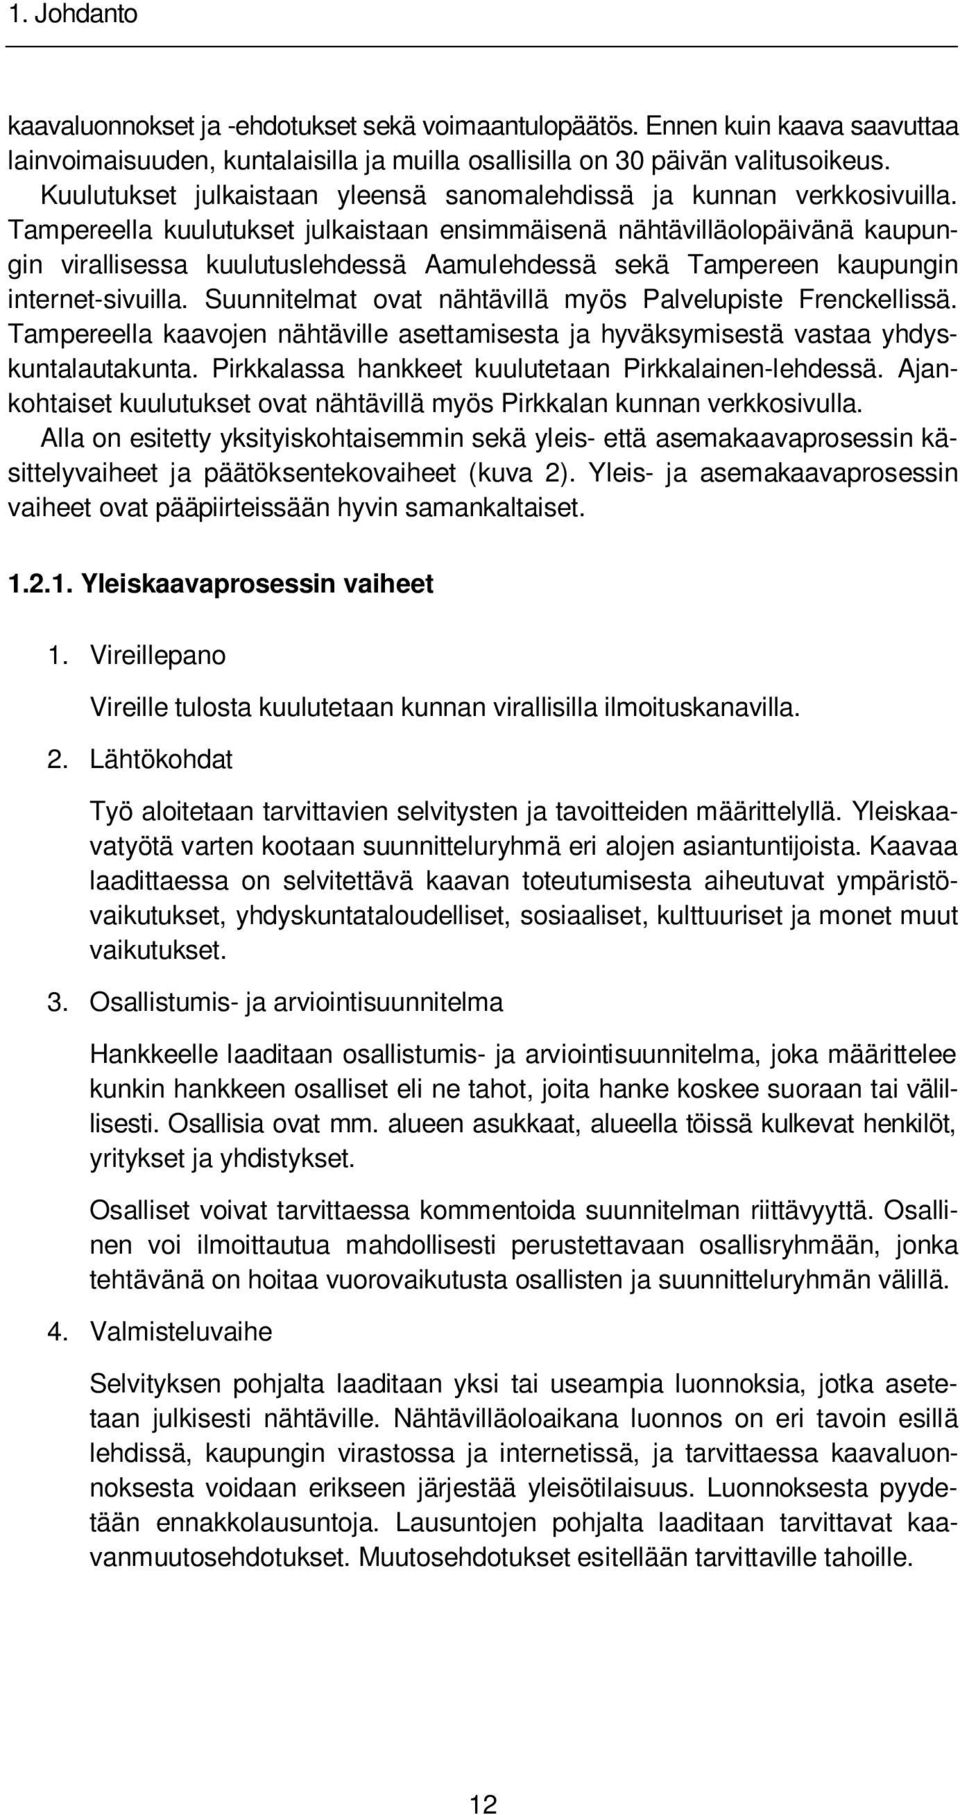 Tampereella kuulutukset julkaistaan ensimmäisenä nähtävilläolopäivänä kaupungin virallisessa kuulutuslehdessä Aamulehdessä sekä Tampereen kaupungin internet-sivuilla.